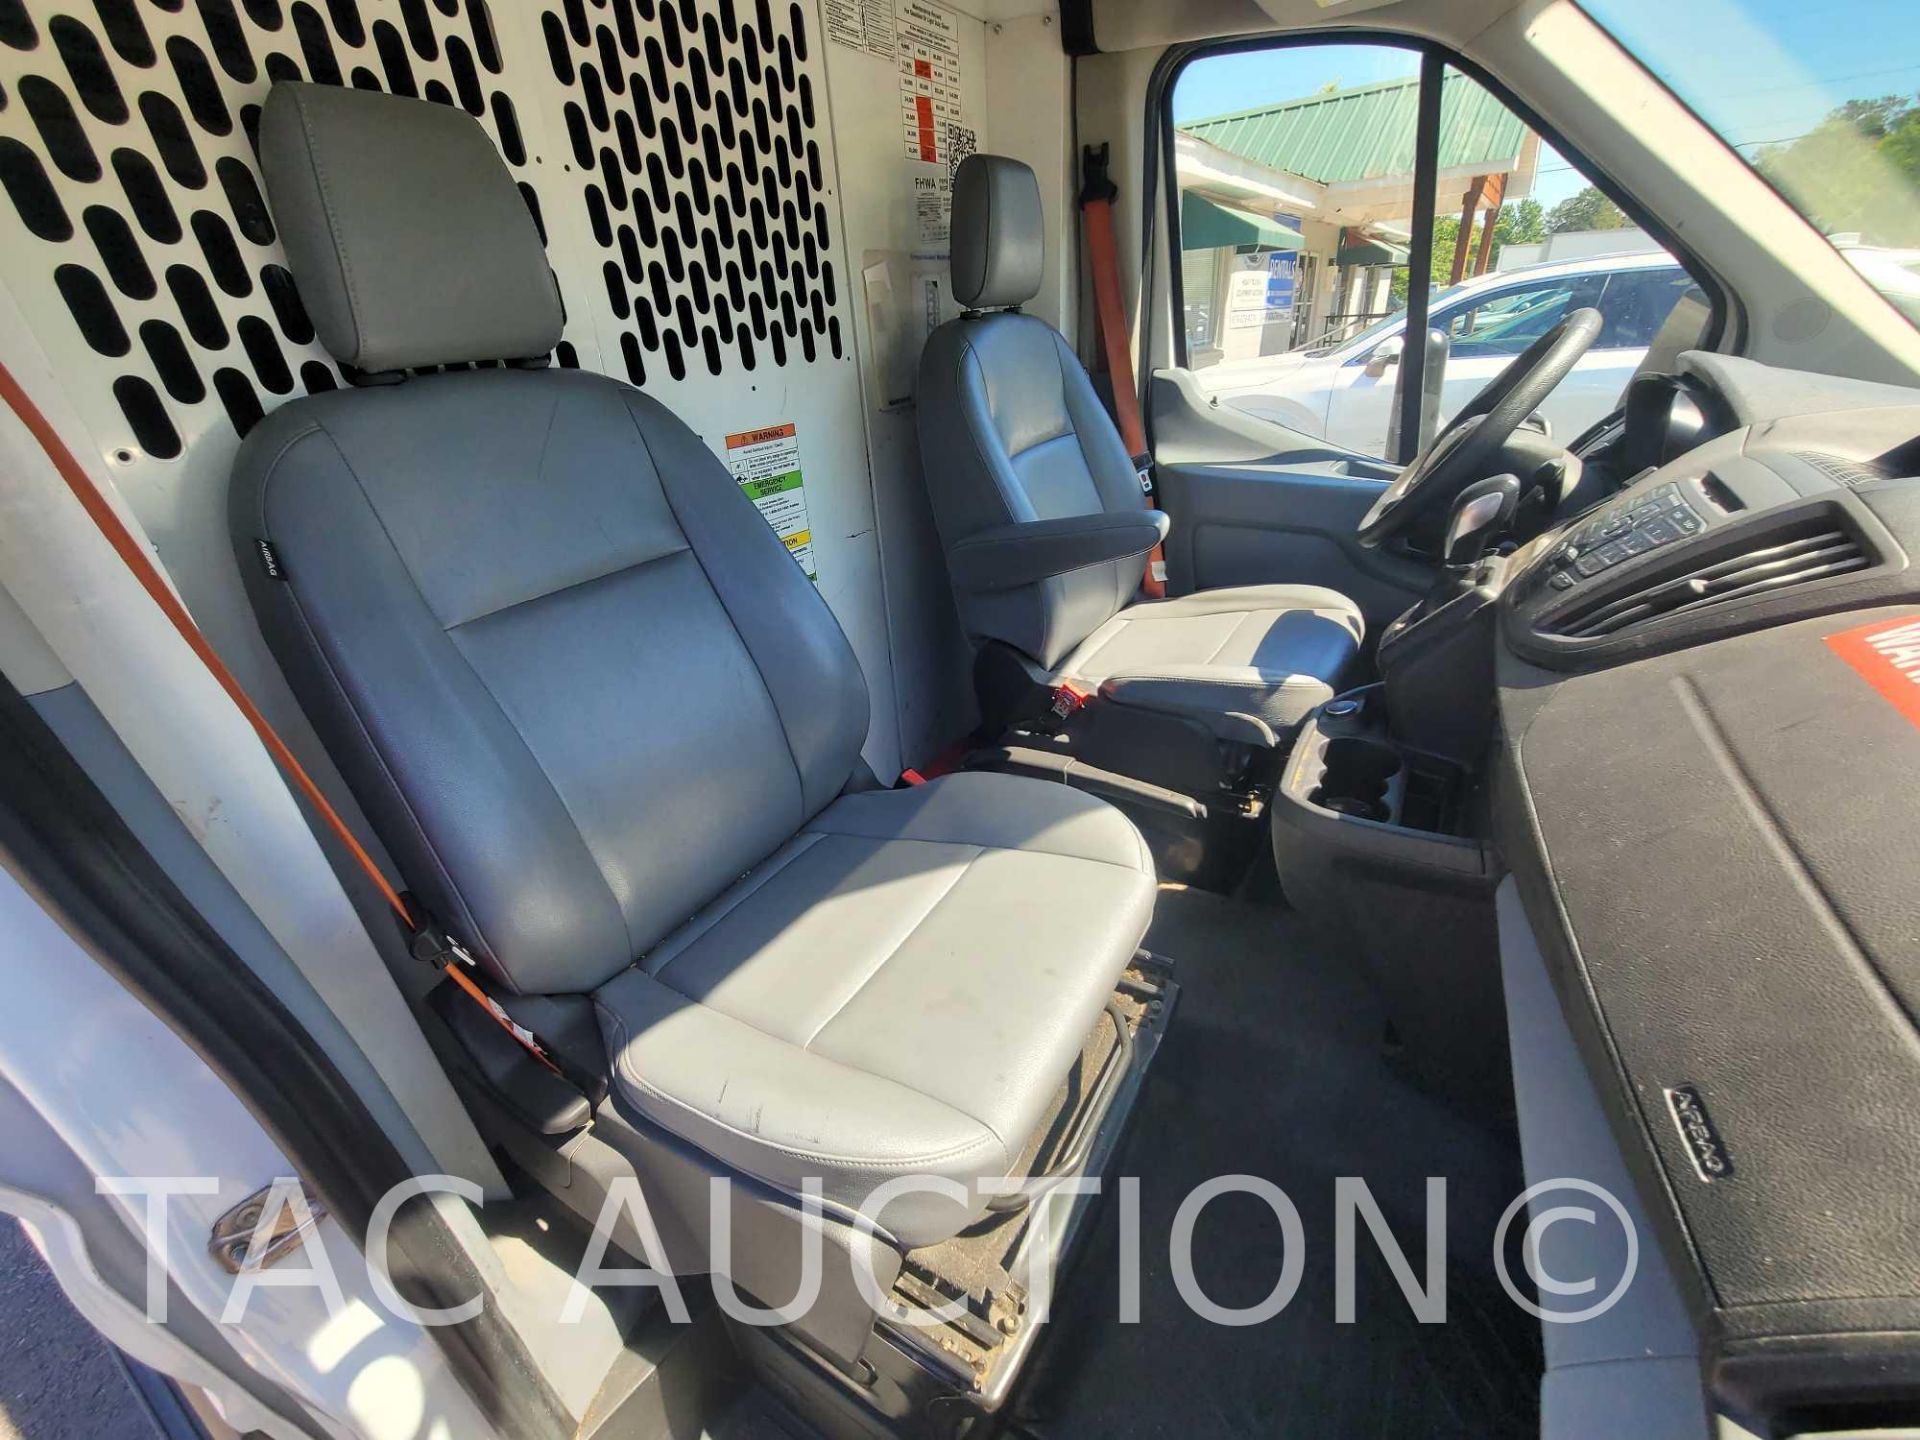 2019 Ford Transit 150 Cargo Van - Image 19 of 52